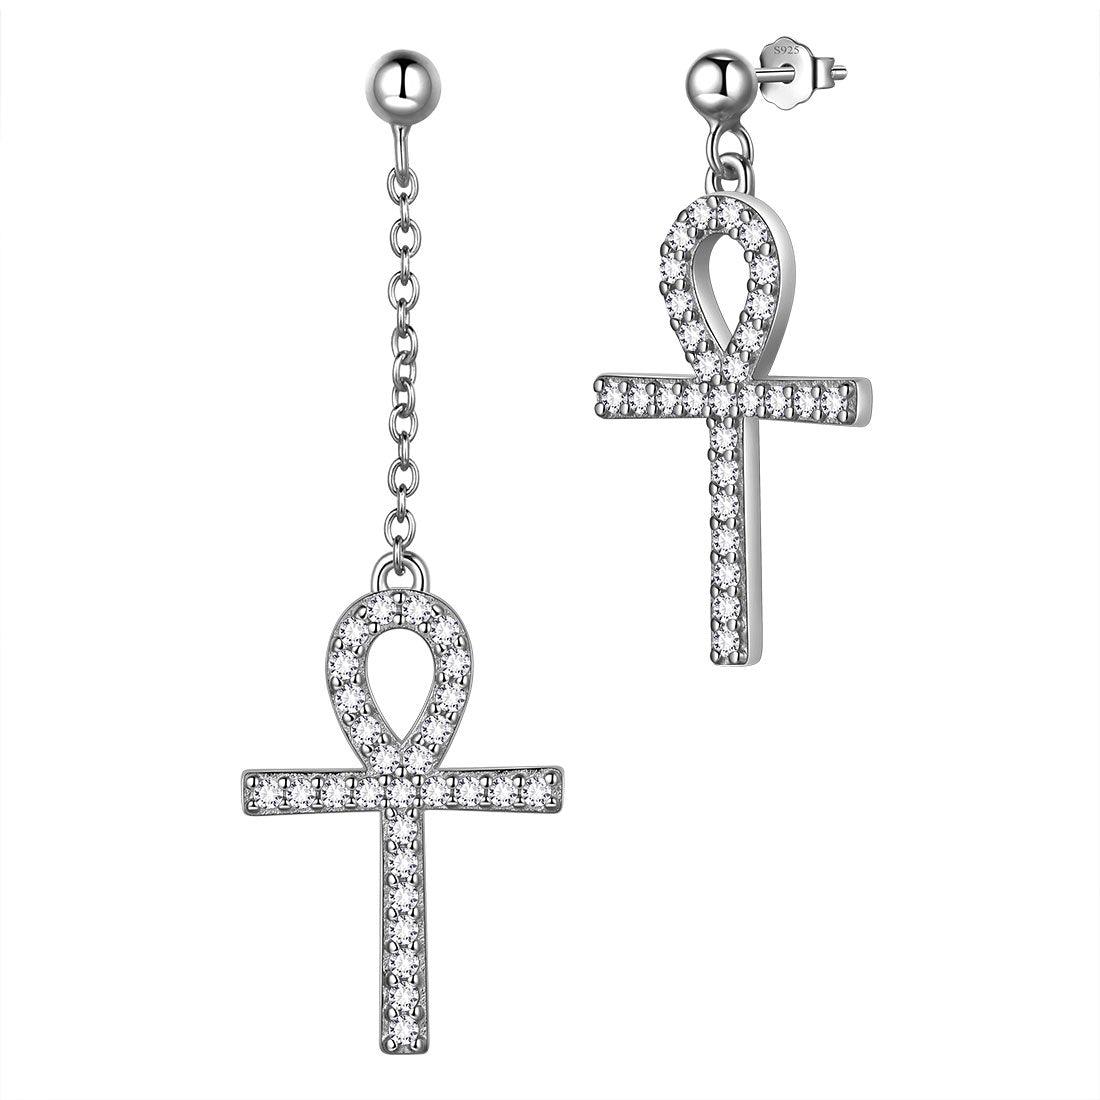 Asymmetry Ankh Cross Earrings Sterling Silver - Earrings - Aurora Tears Jewelry